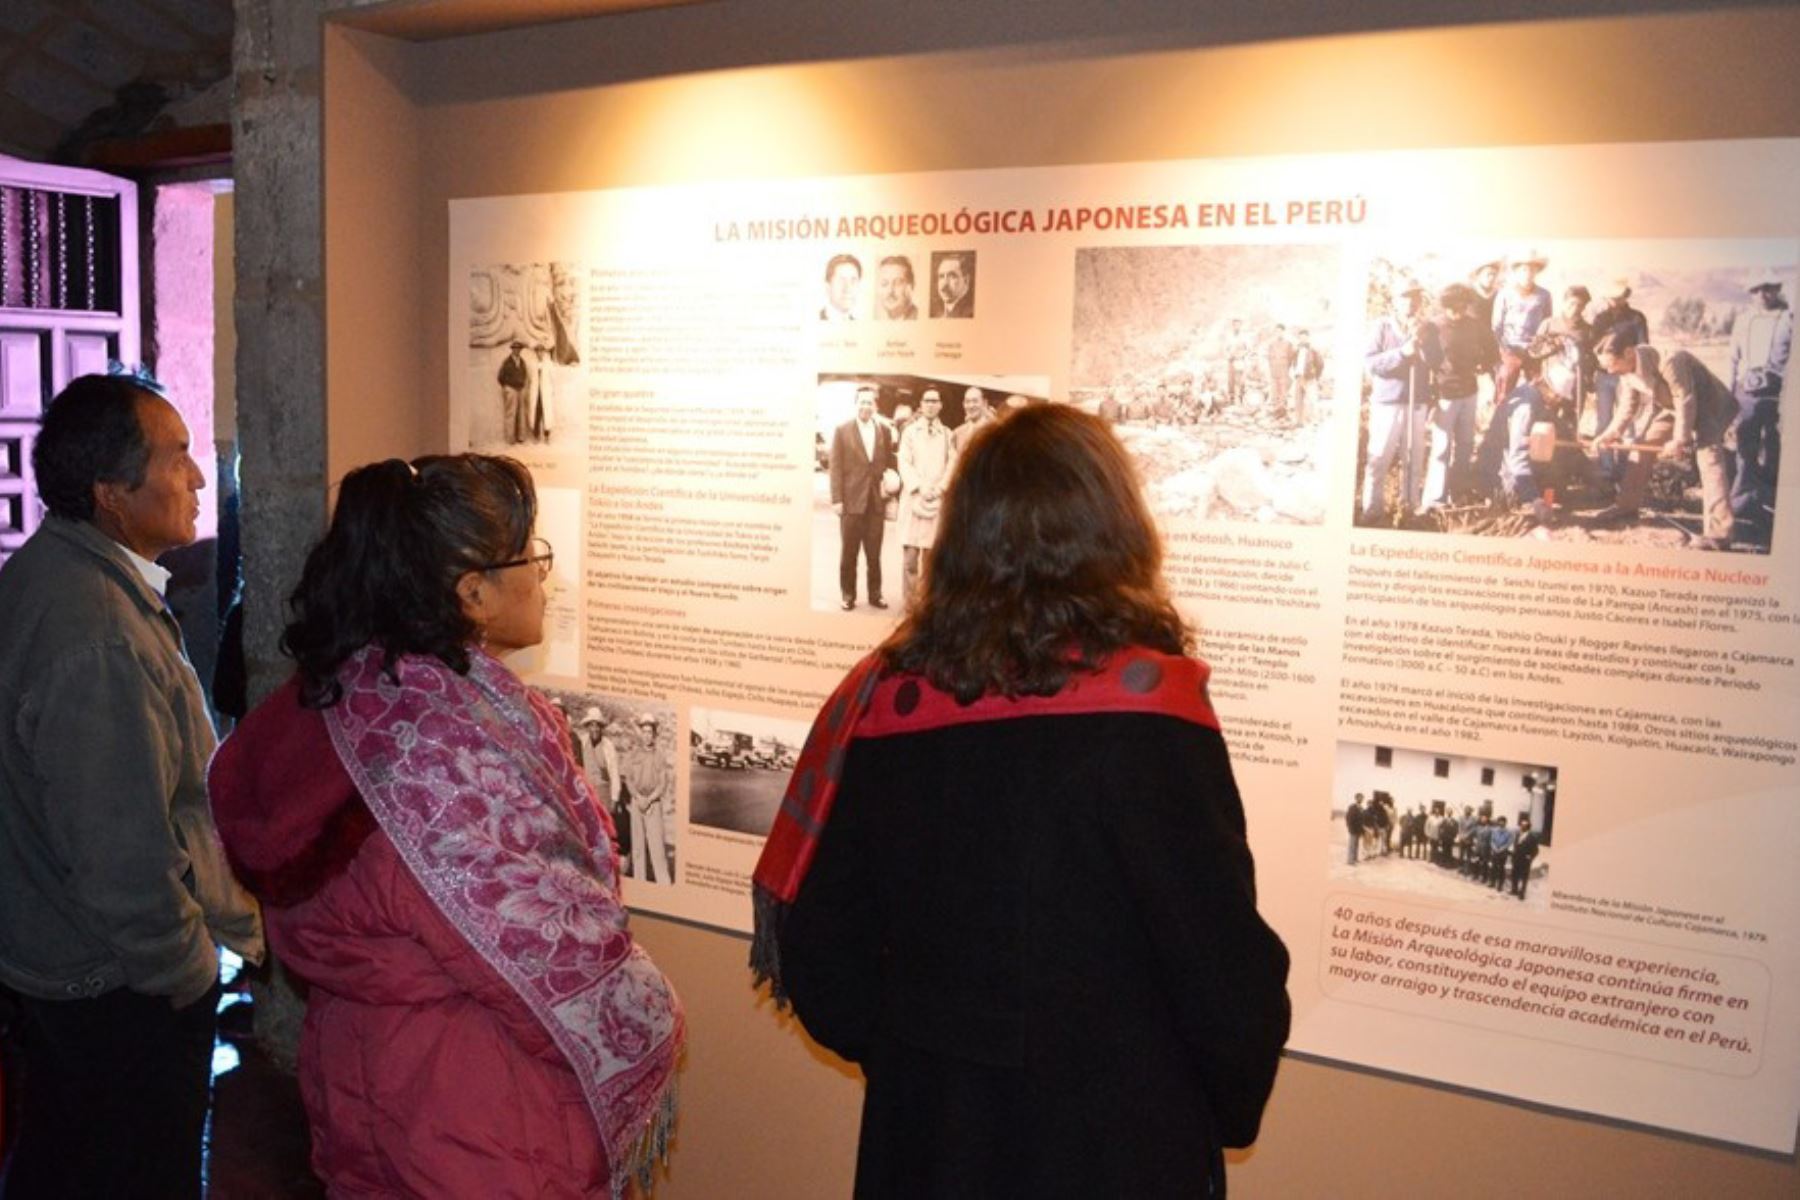 Más de 3,000 personas visitaron exposición arqueológica que resume los 40 años de trabajo de investigación de la misión japonesa en Cajamarca. Foto: Eduard Lozano